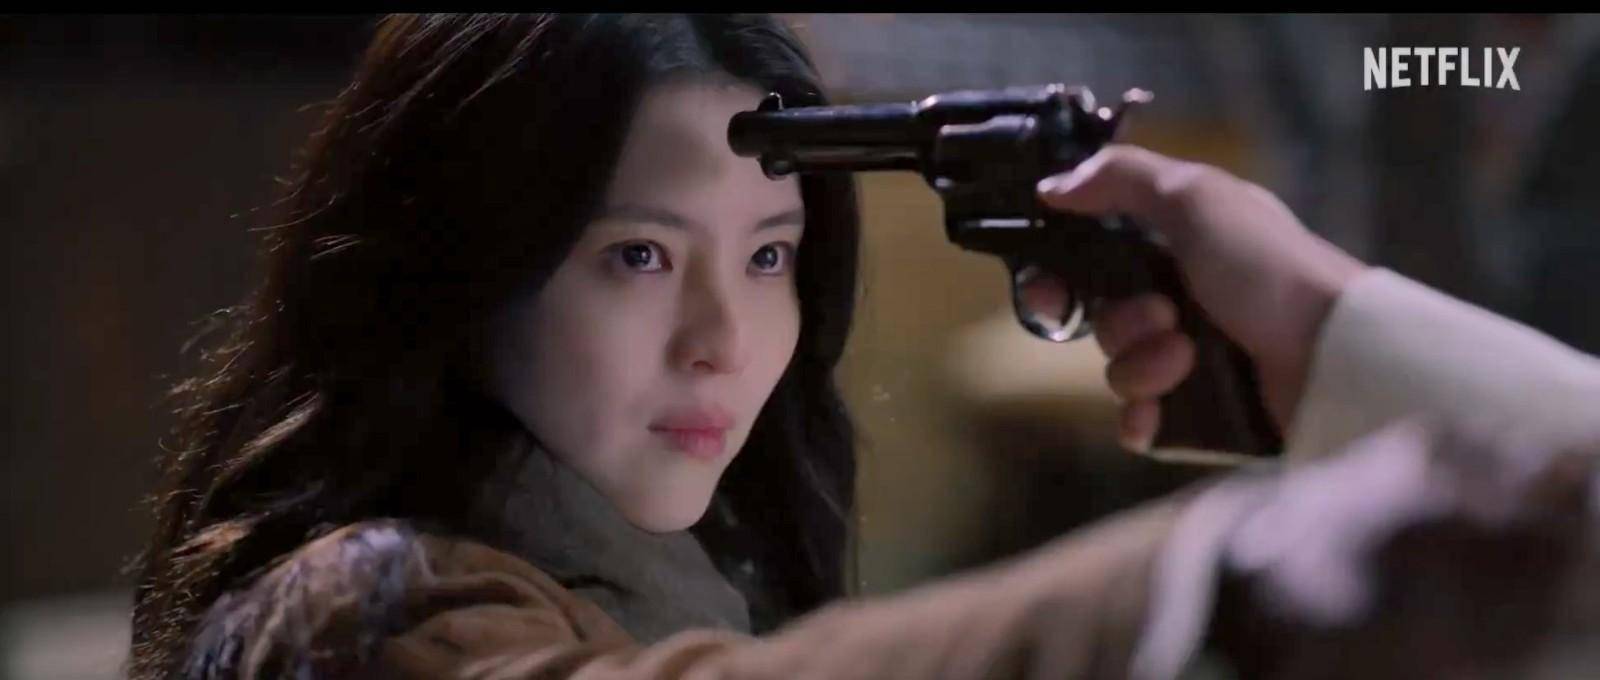 Netflix惊悚韩剧《京城怪物》正式先导预告